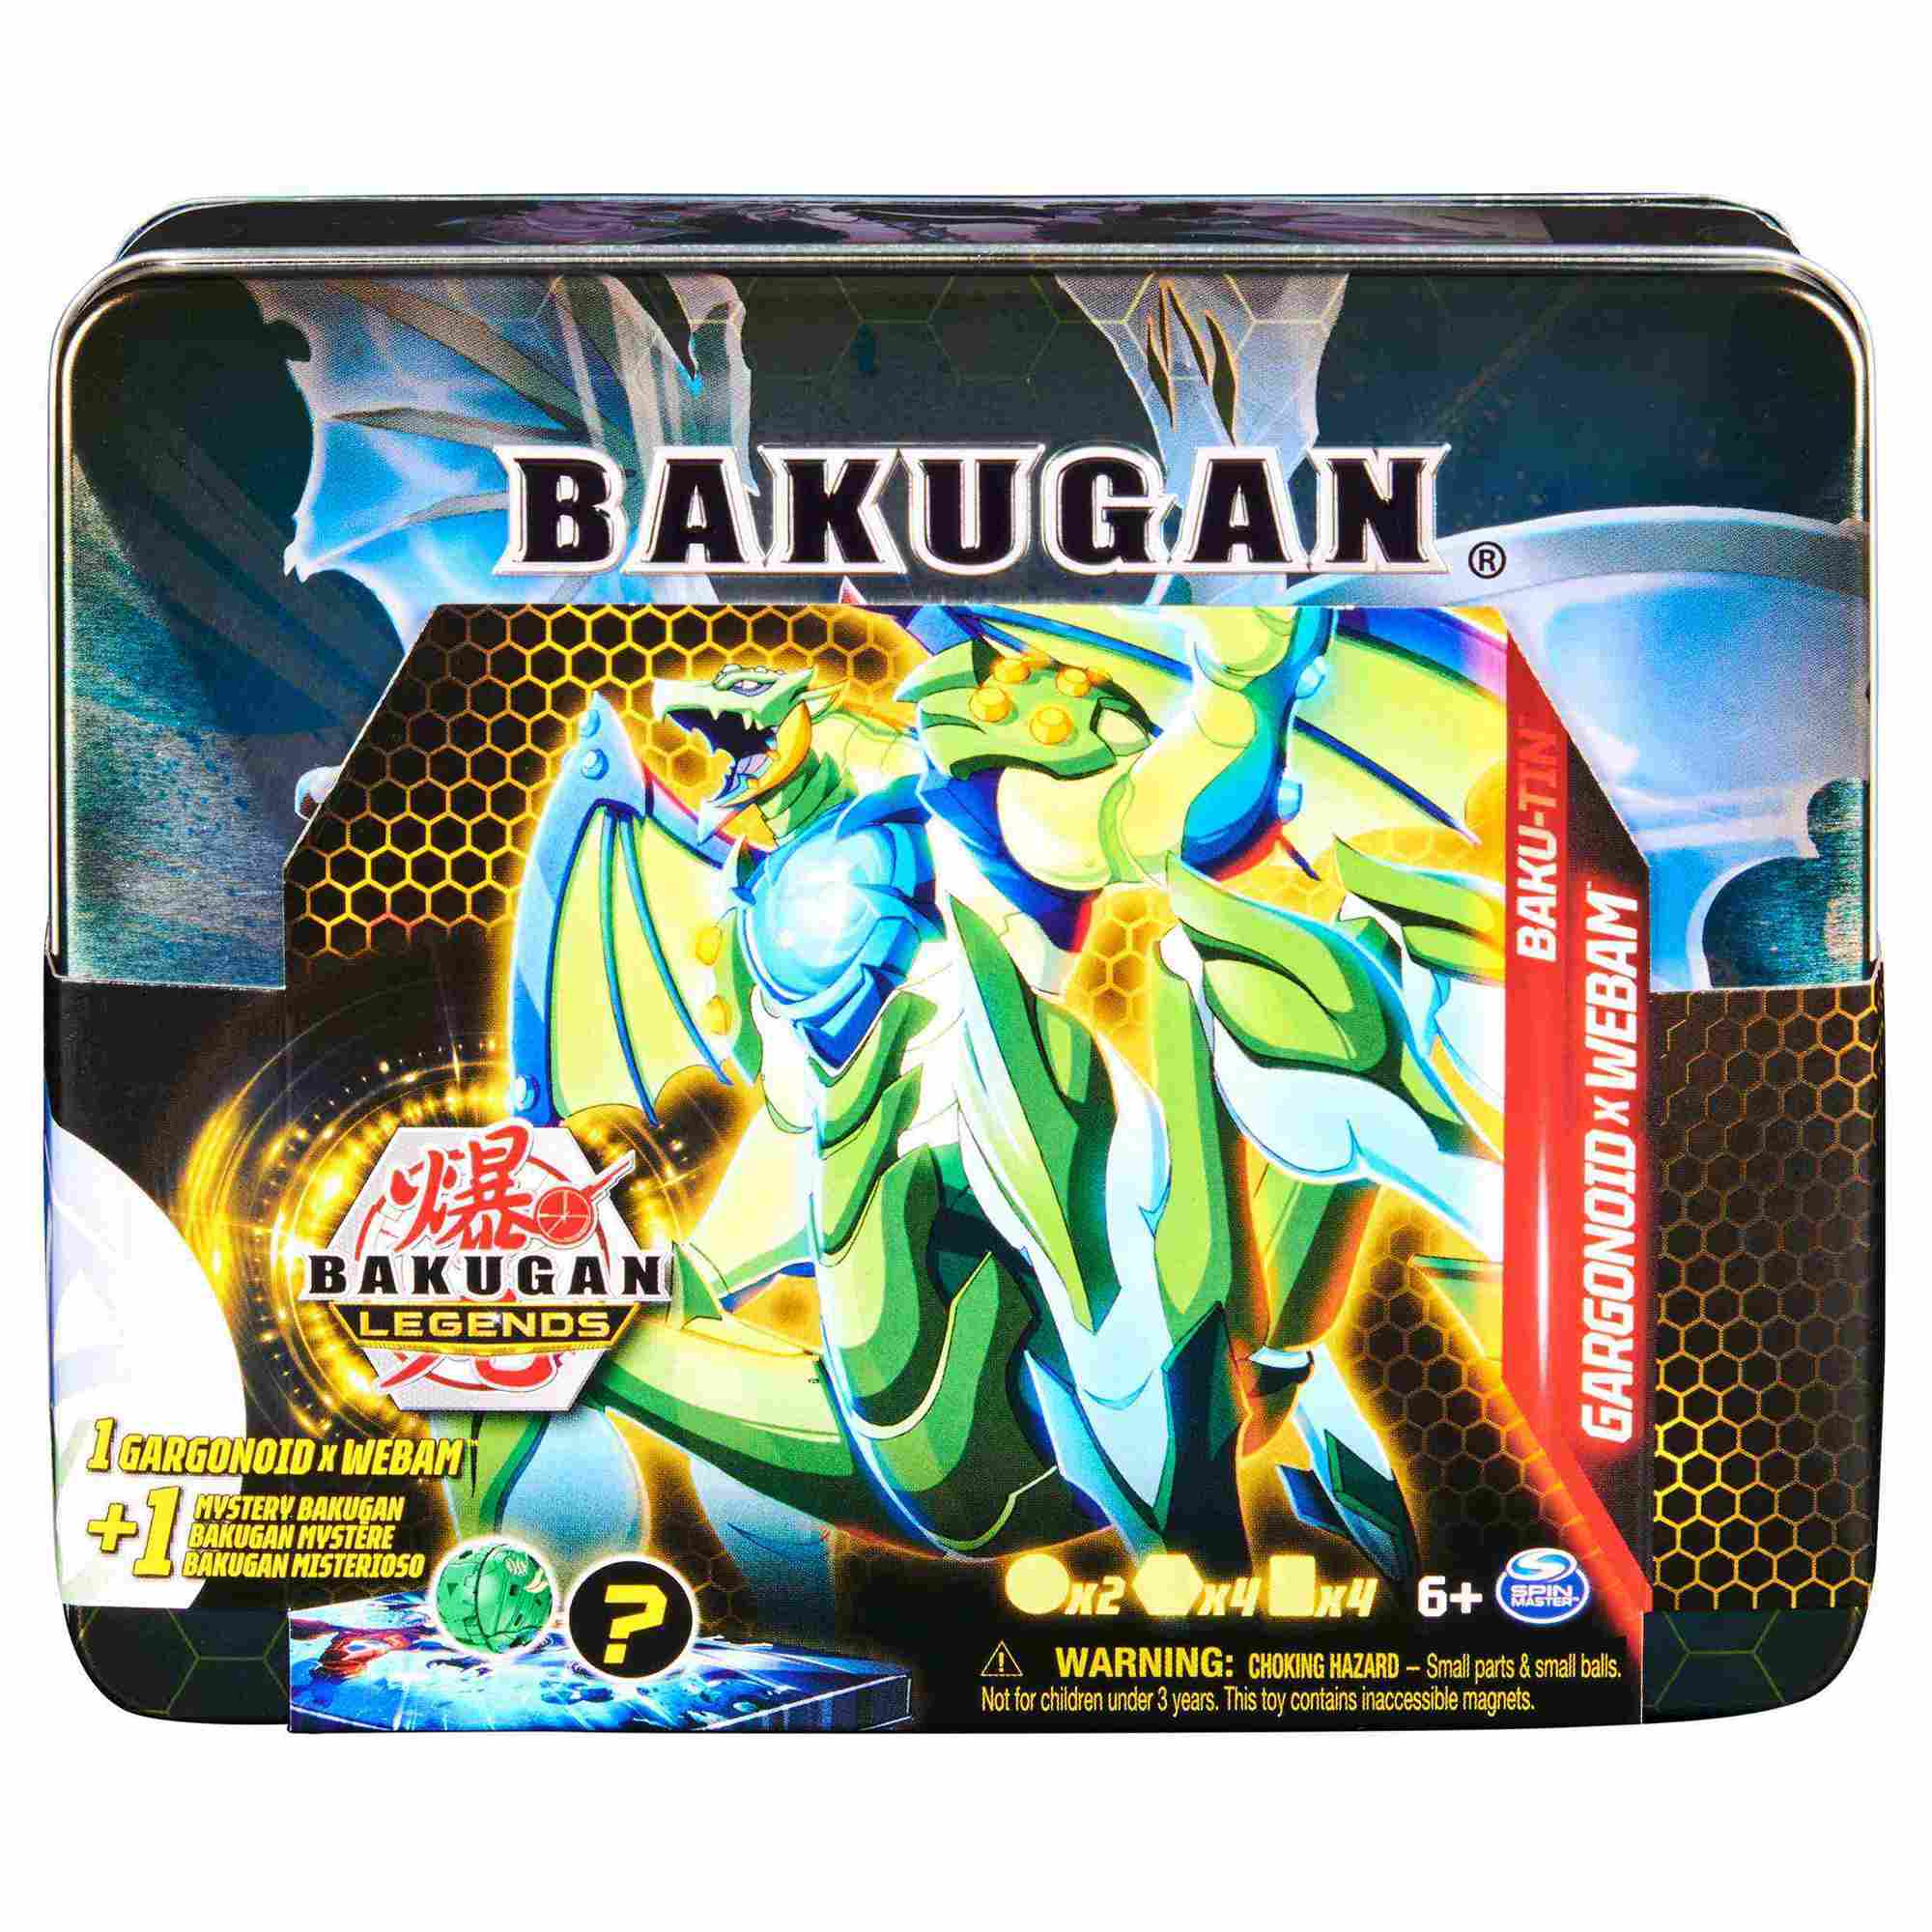 Bakugan Legends Bakutin Box 6066256 - Bakugan